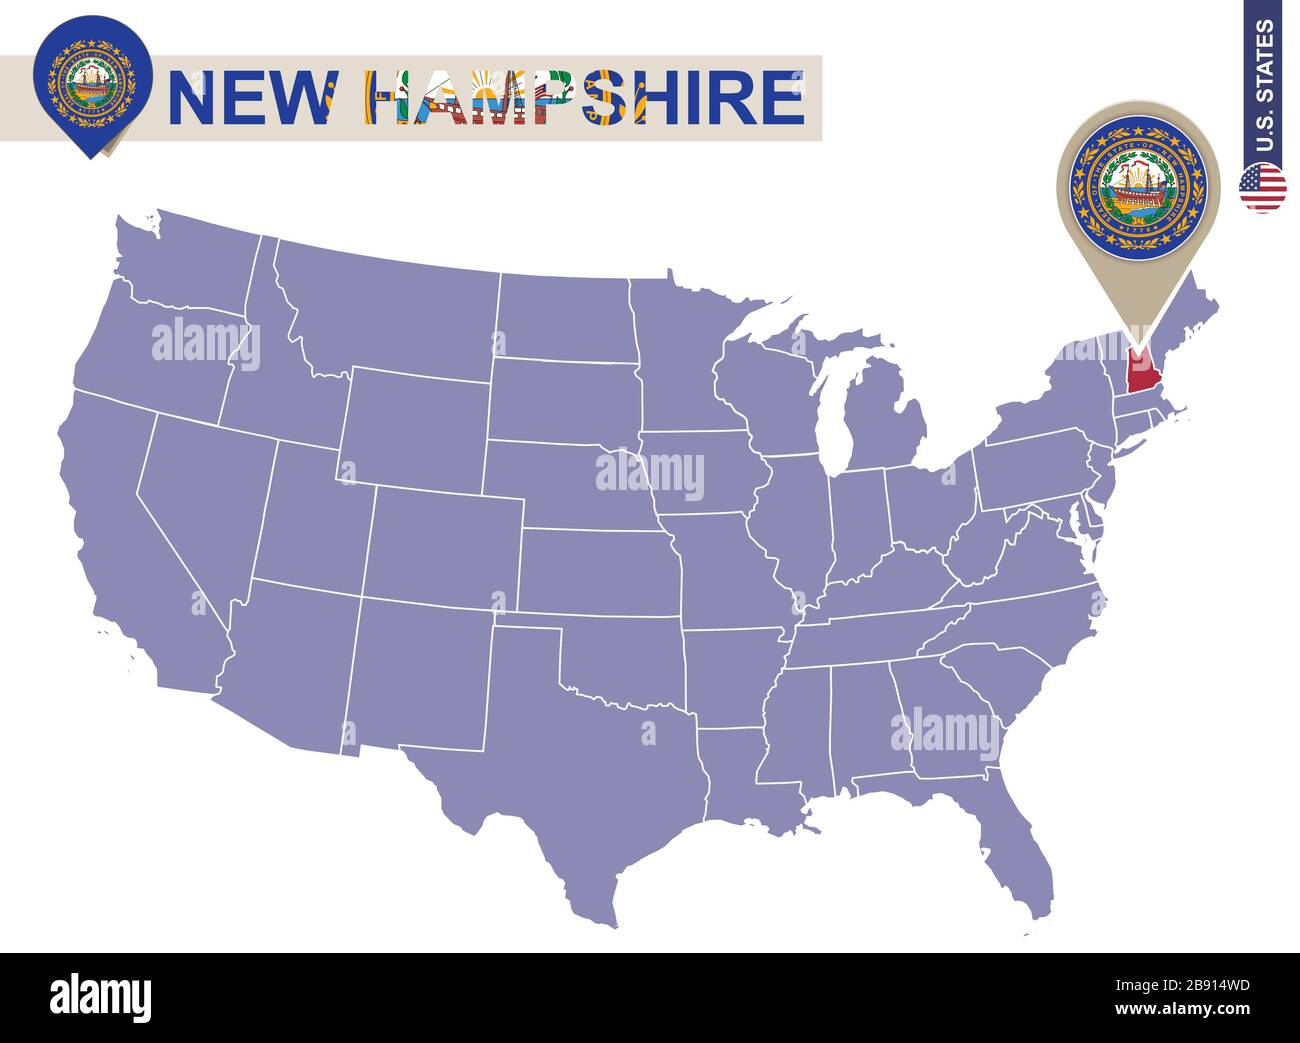 New Hampshire State sur la carte des États-Unis. Drapeau et carte du New Hampshire. États-UNIS. Illustration de Vecteur